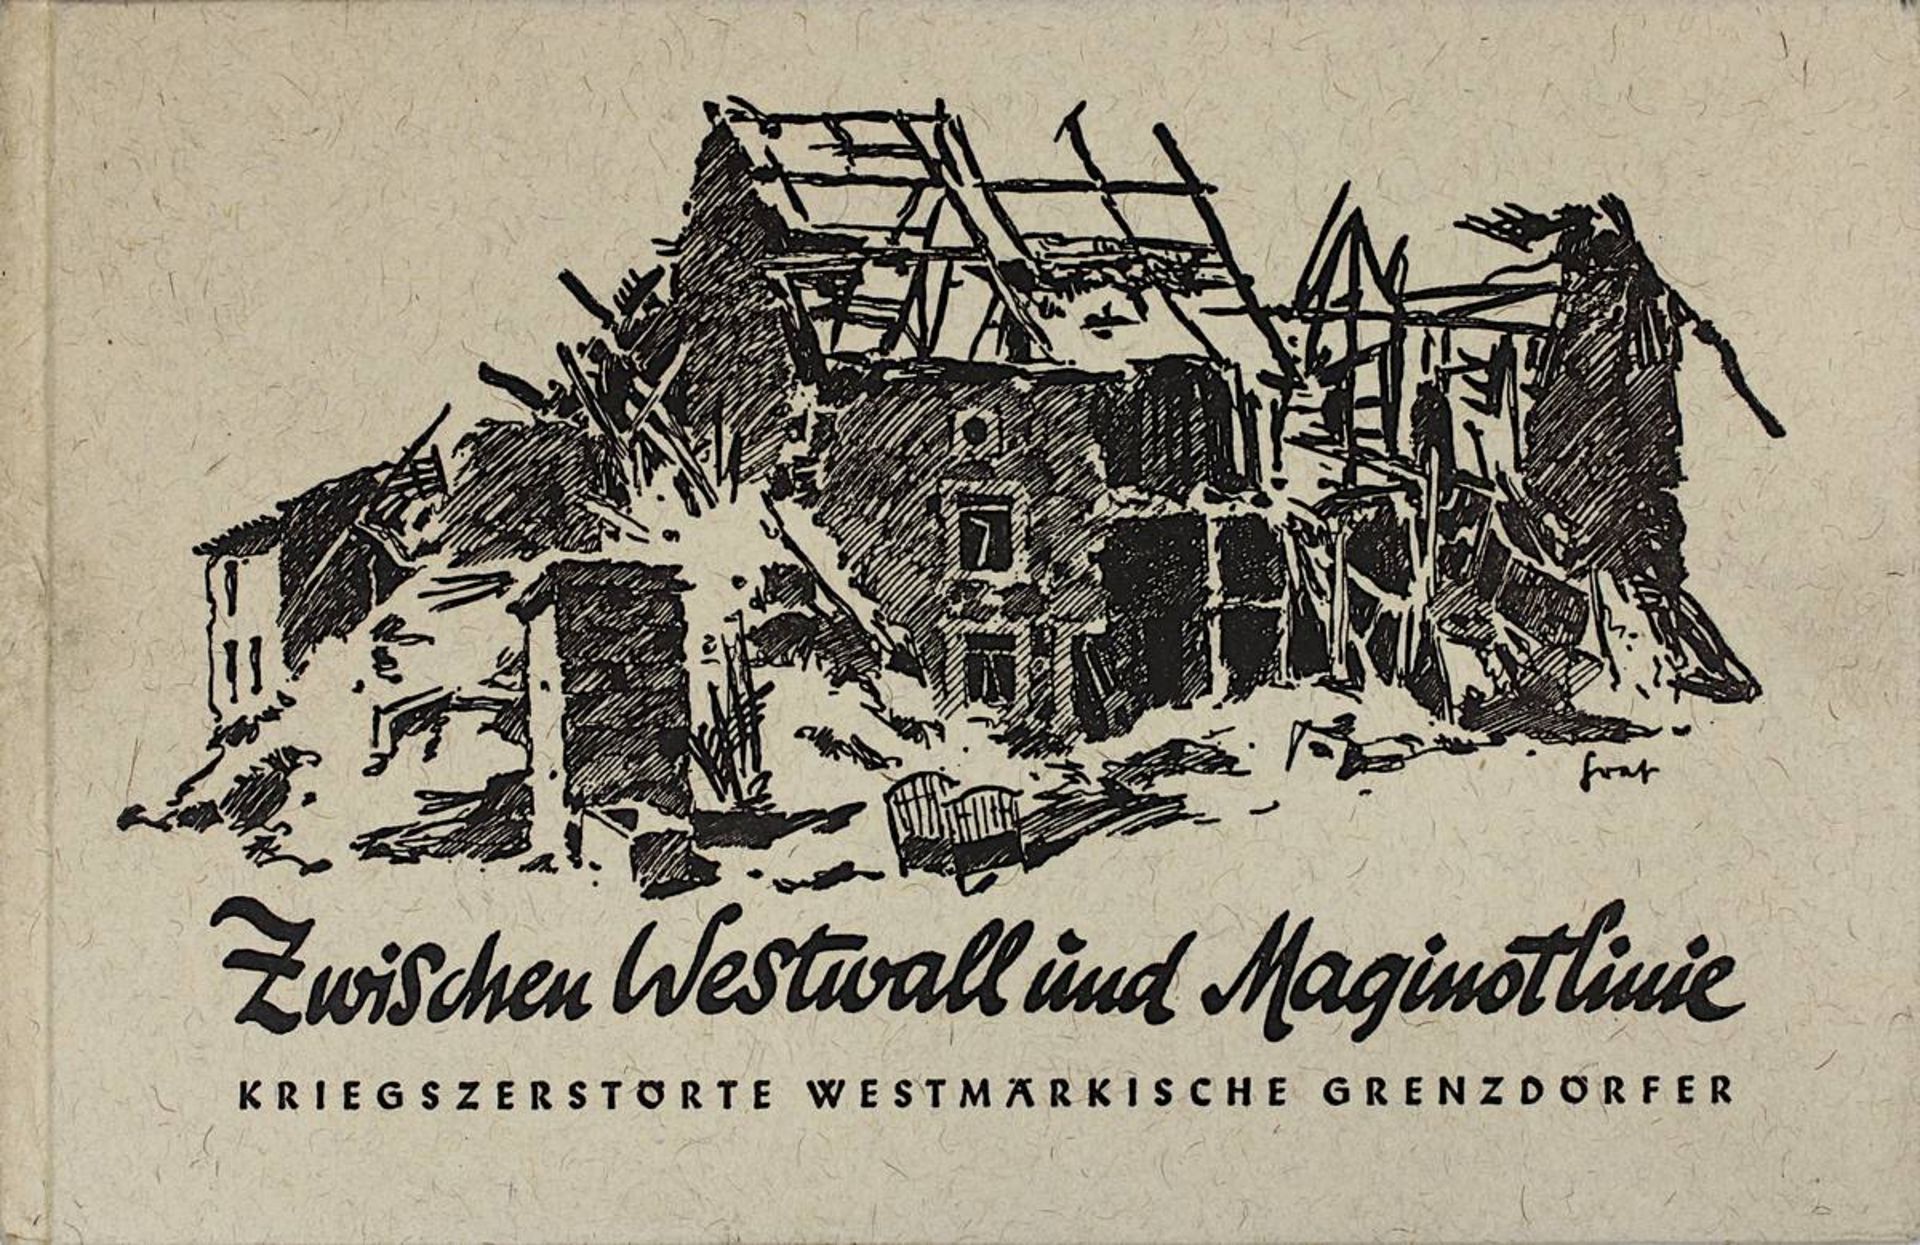 Betsch, Roland "Zwischen Westwall und Maginotlinie", kriegszerstörte westmärkische Grenzdörfer,